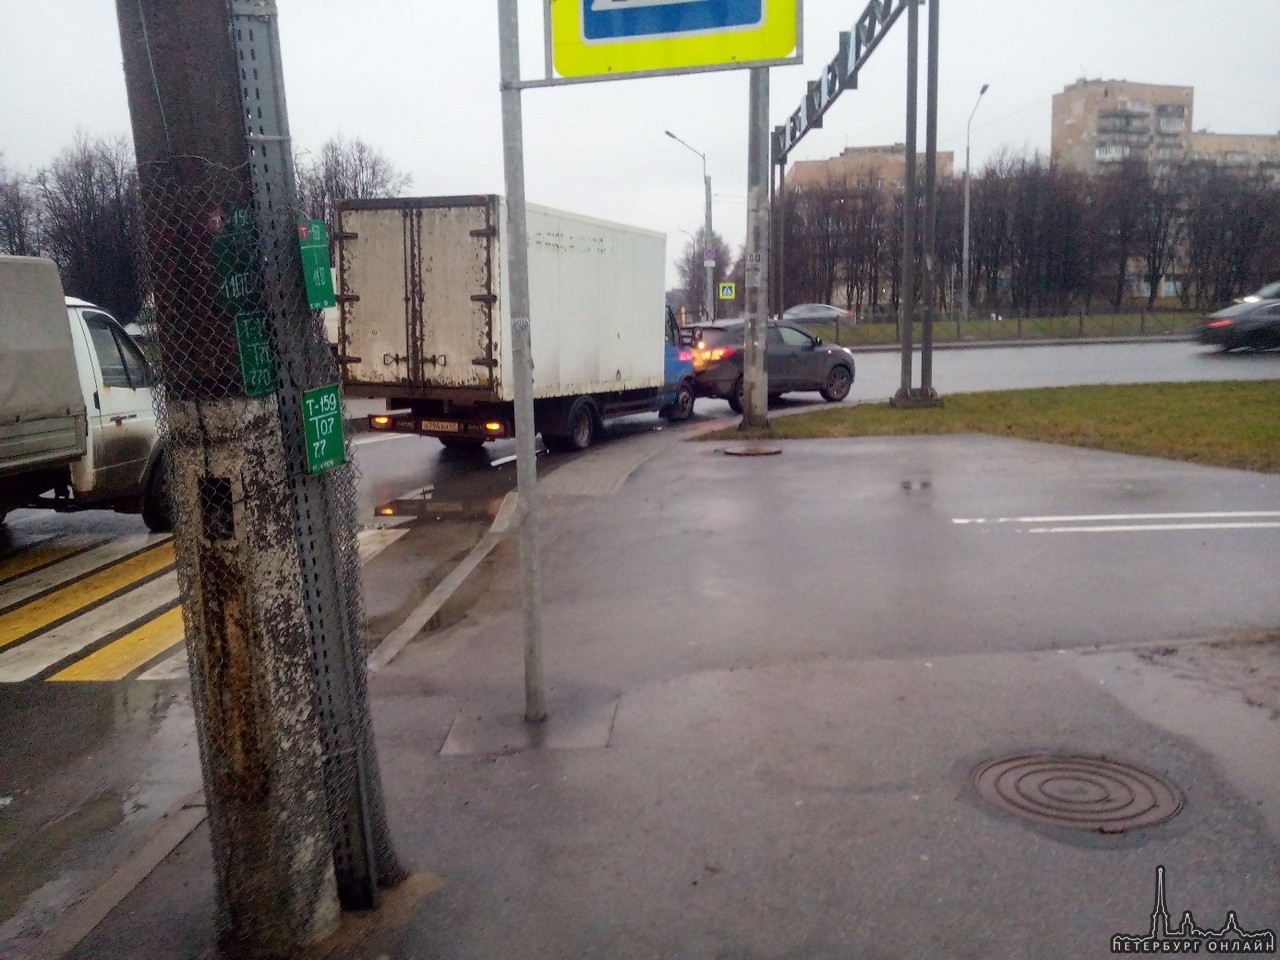 Дтп на Меншиковском проспекте, выезд на пр. Непокорённых по встречке, автобусы 153 маршрута встали.